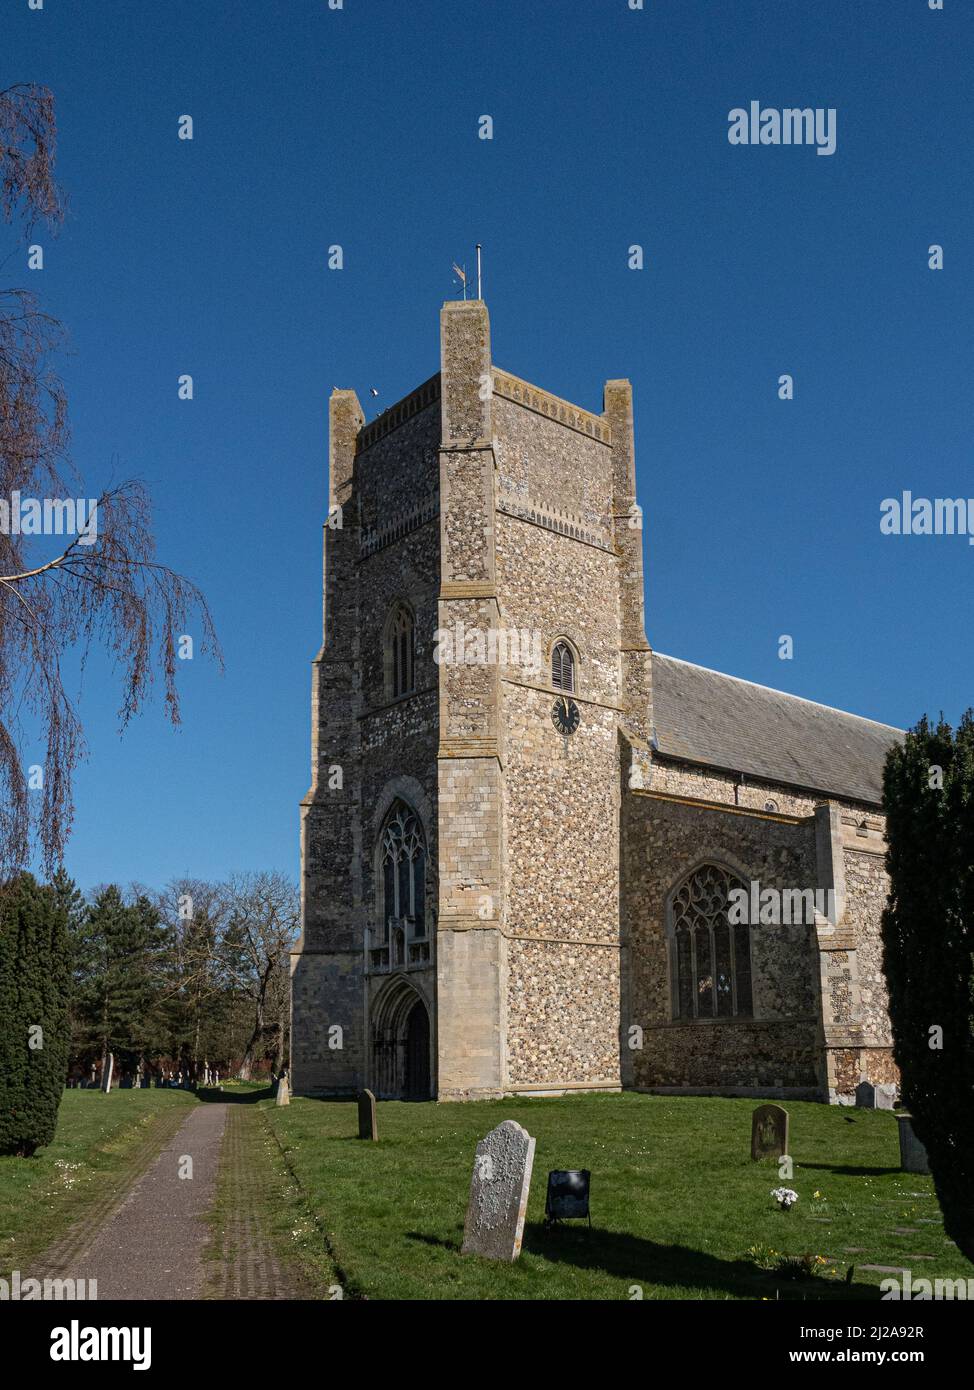 La torre de la Iglesia de San Bartolomé, Orford, se enmarca en un claro cielo azul Foto de stock